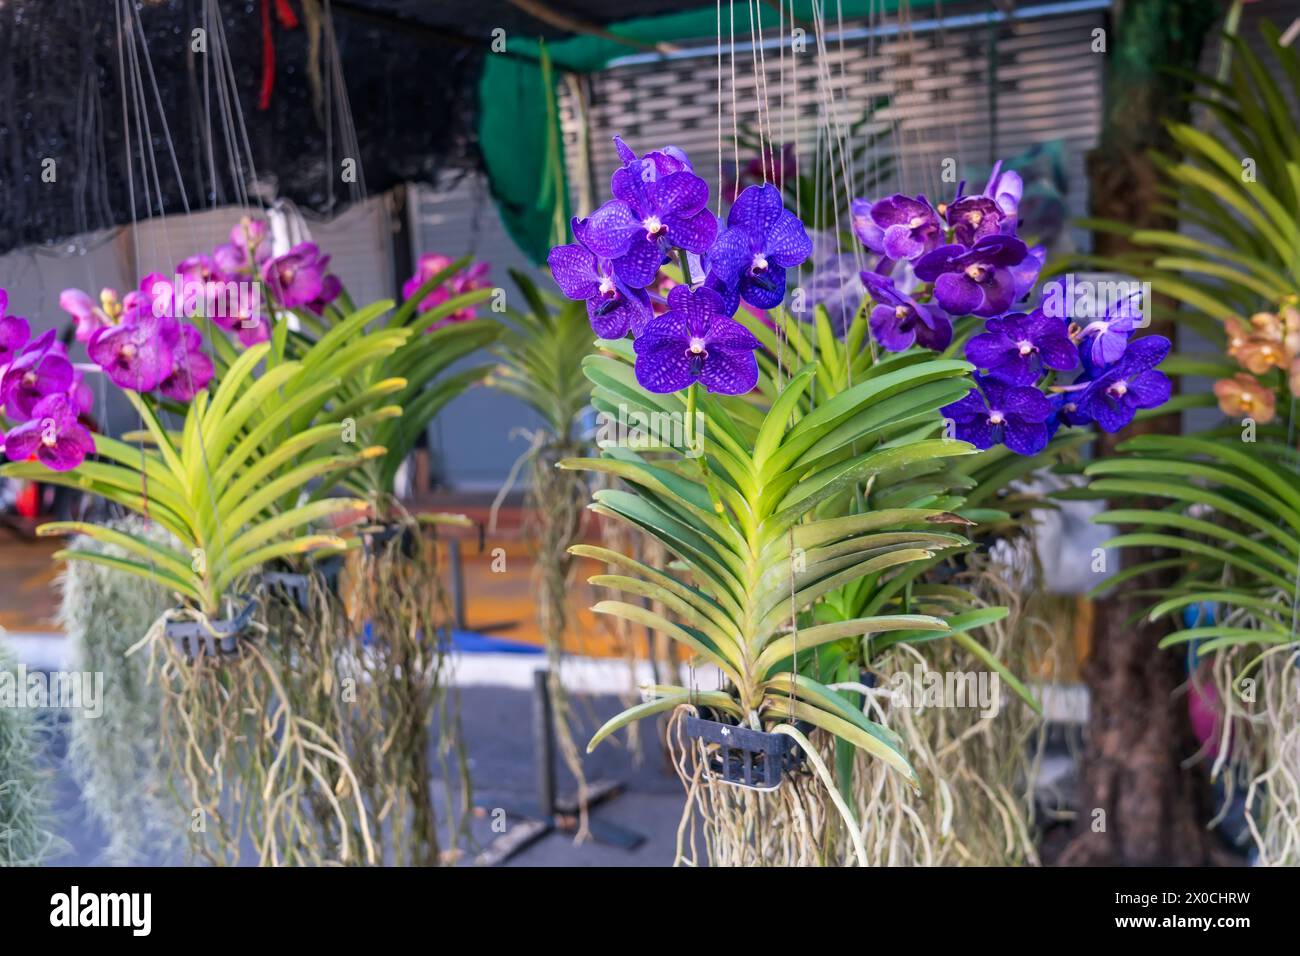 Belles orchidées vanda orchidee kaufen avec de belles fleurs et des feuilles vertes. Beaucoup de couleurs différentes sur l'affichage dans un centre de jardin. Banque D'Images